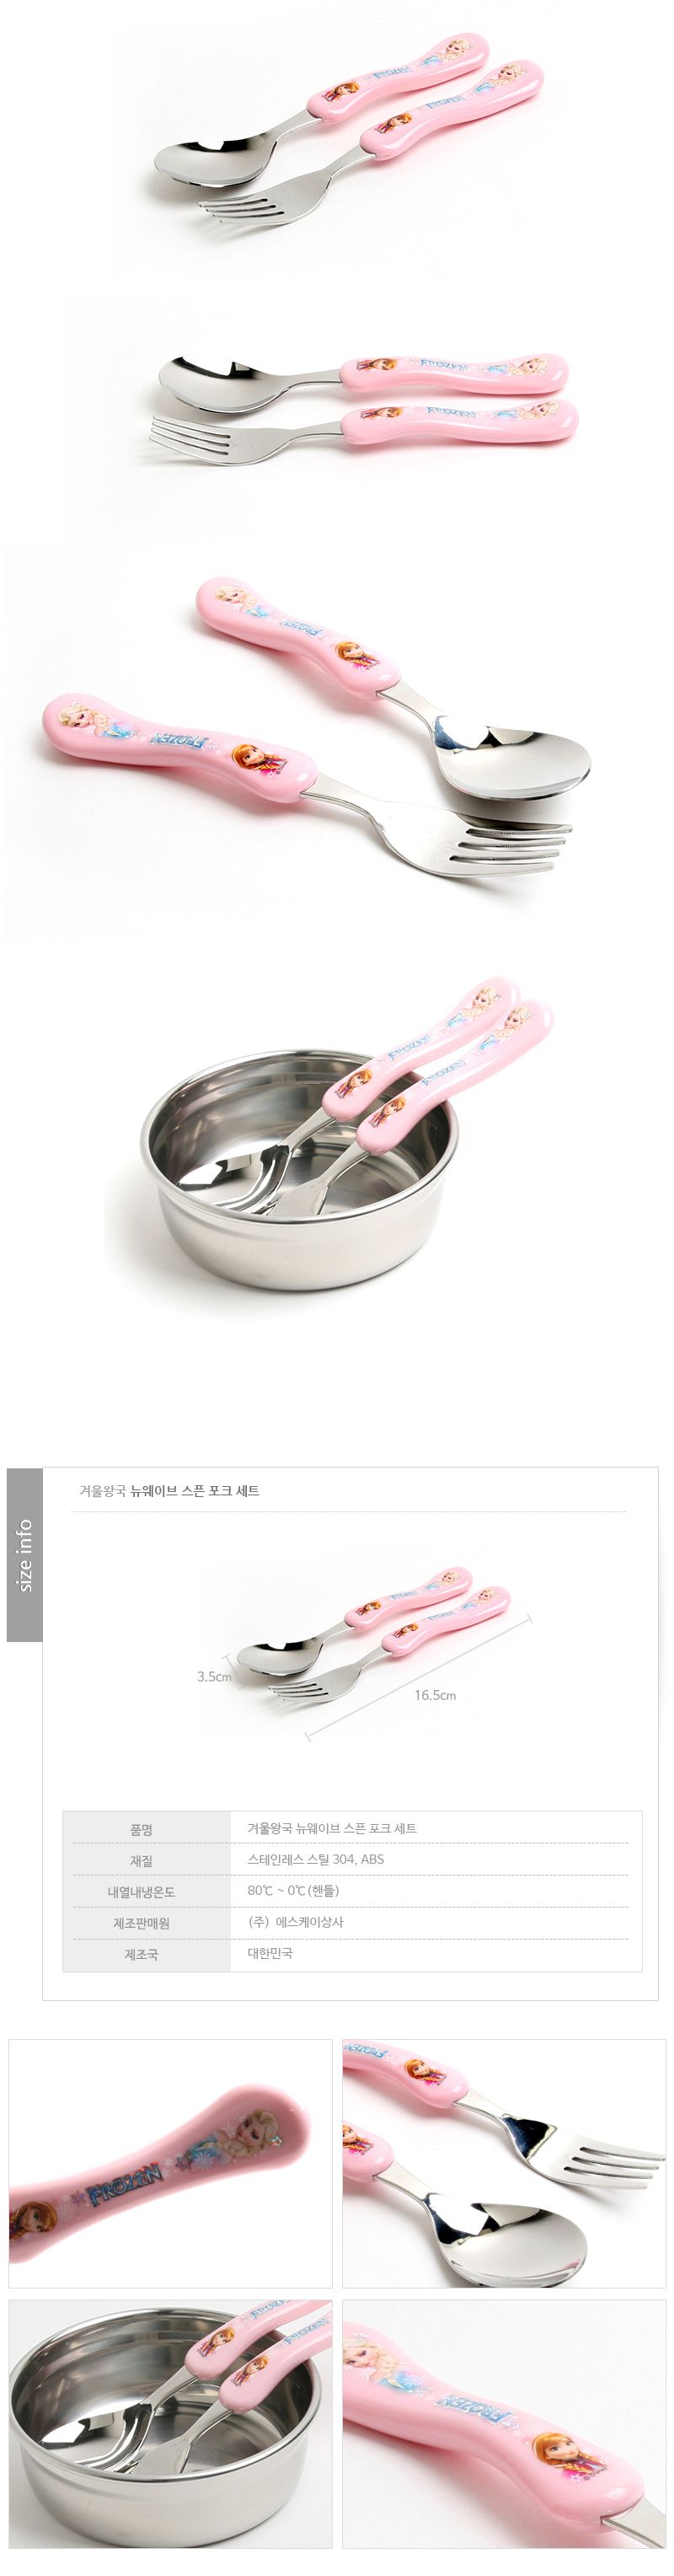 韓國製FROZEN冰雪奇緣兒童餐具組(湯匙+叉子)